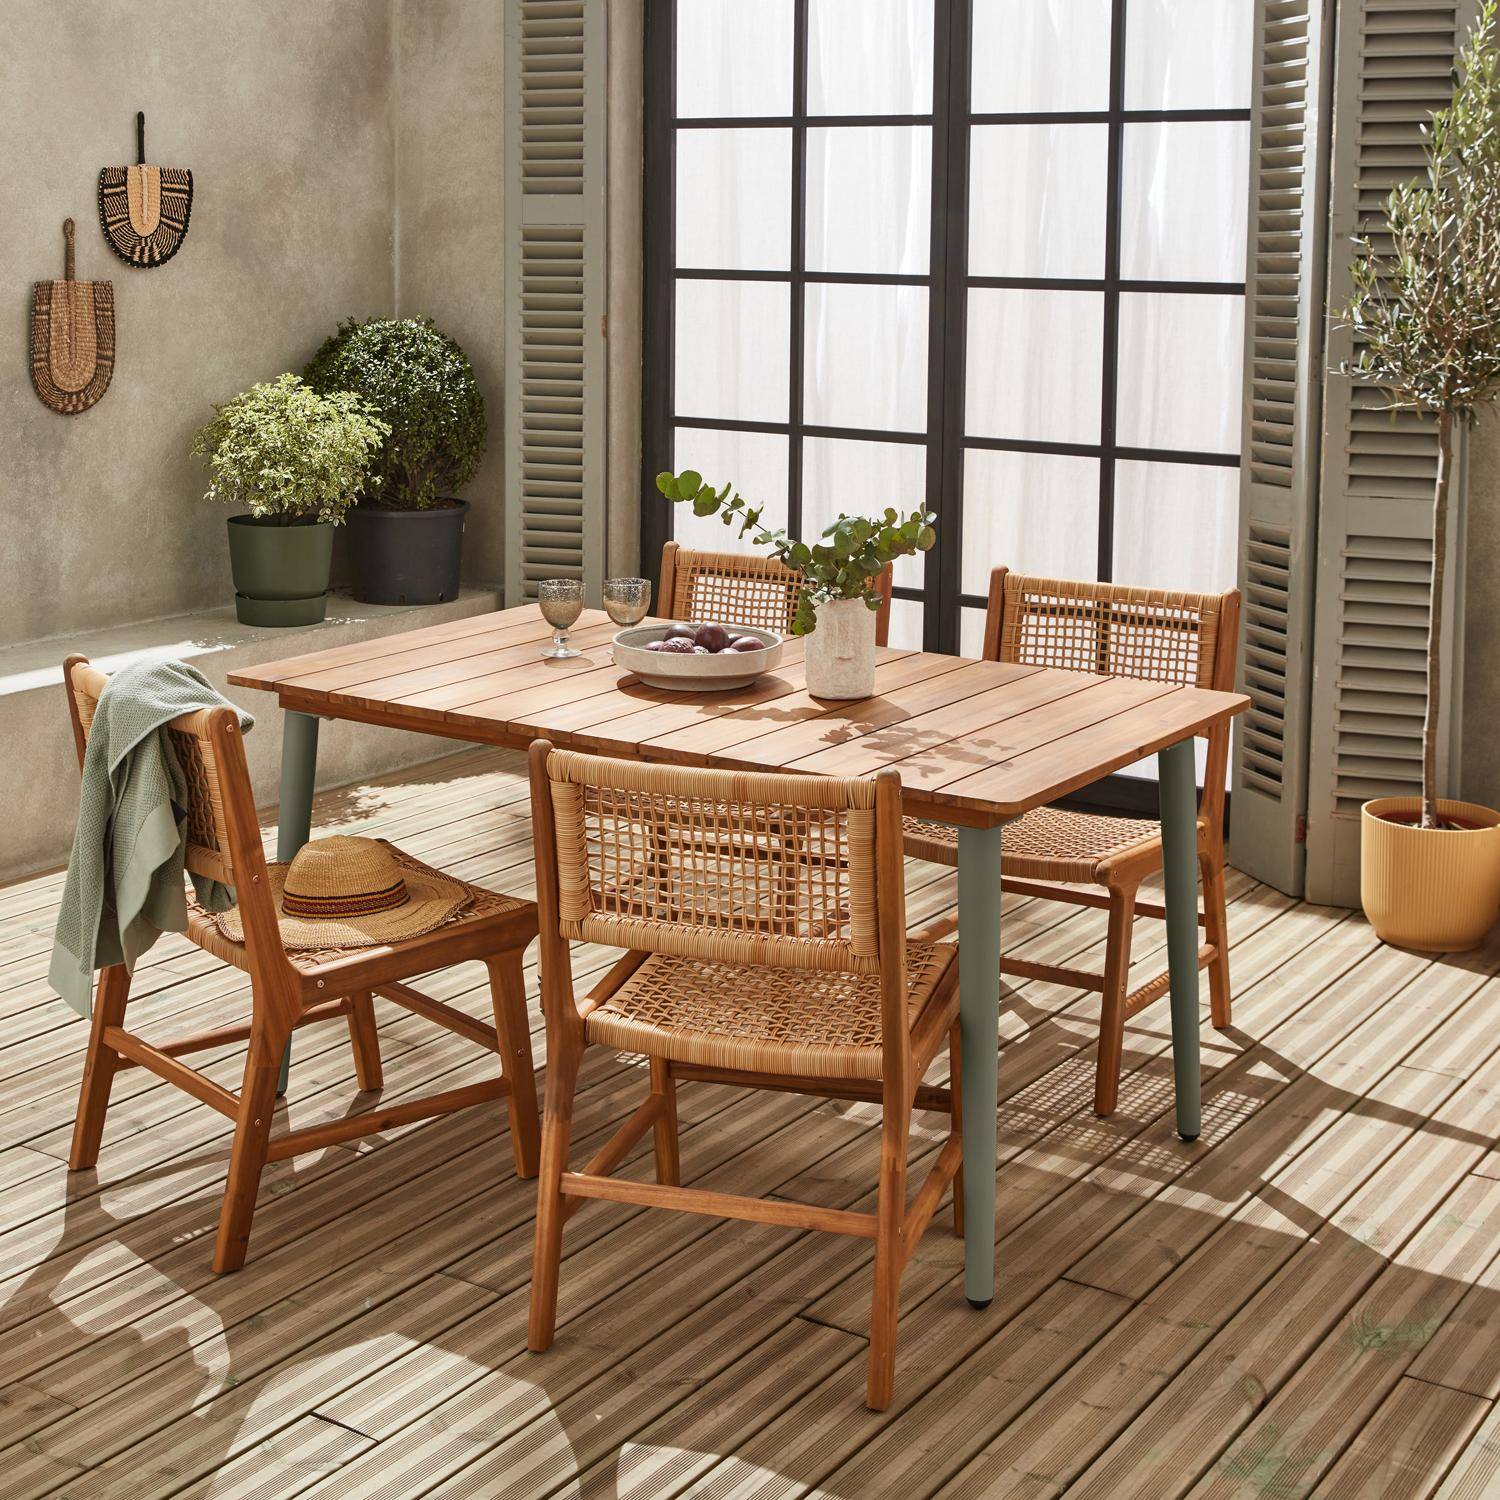 Essgruppe mit Gartentisch 150 cm aus Holz und Metall, salbeigrün,  + 4 Stühle, Geflecht und Holz - MARINGA / OCARA Photo1